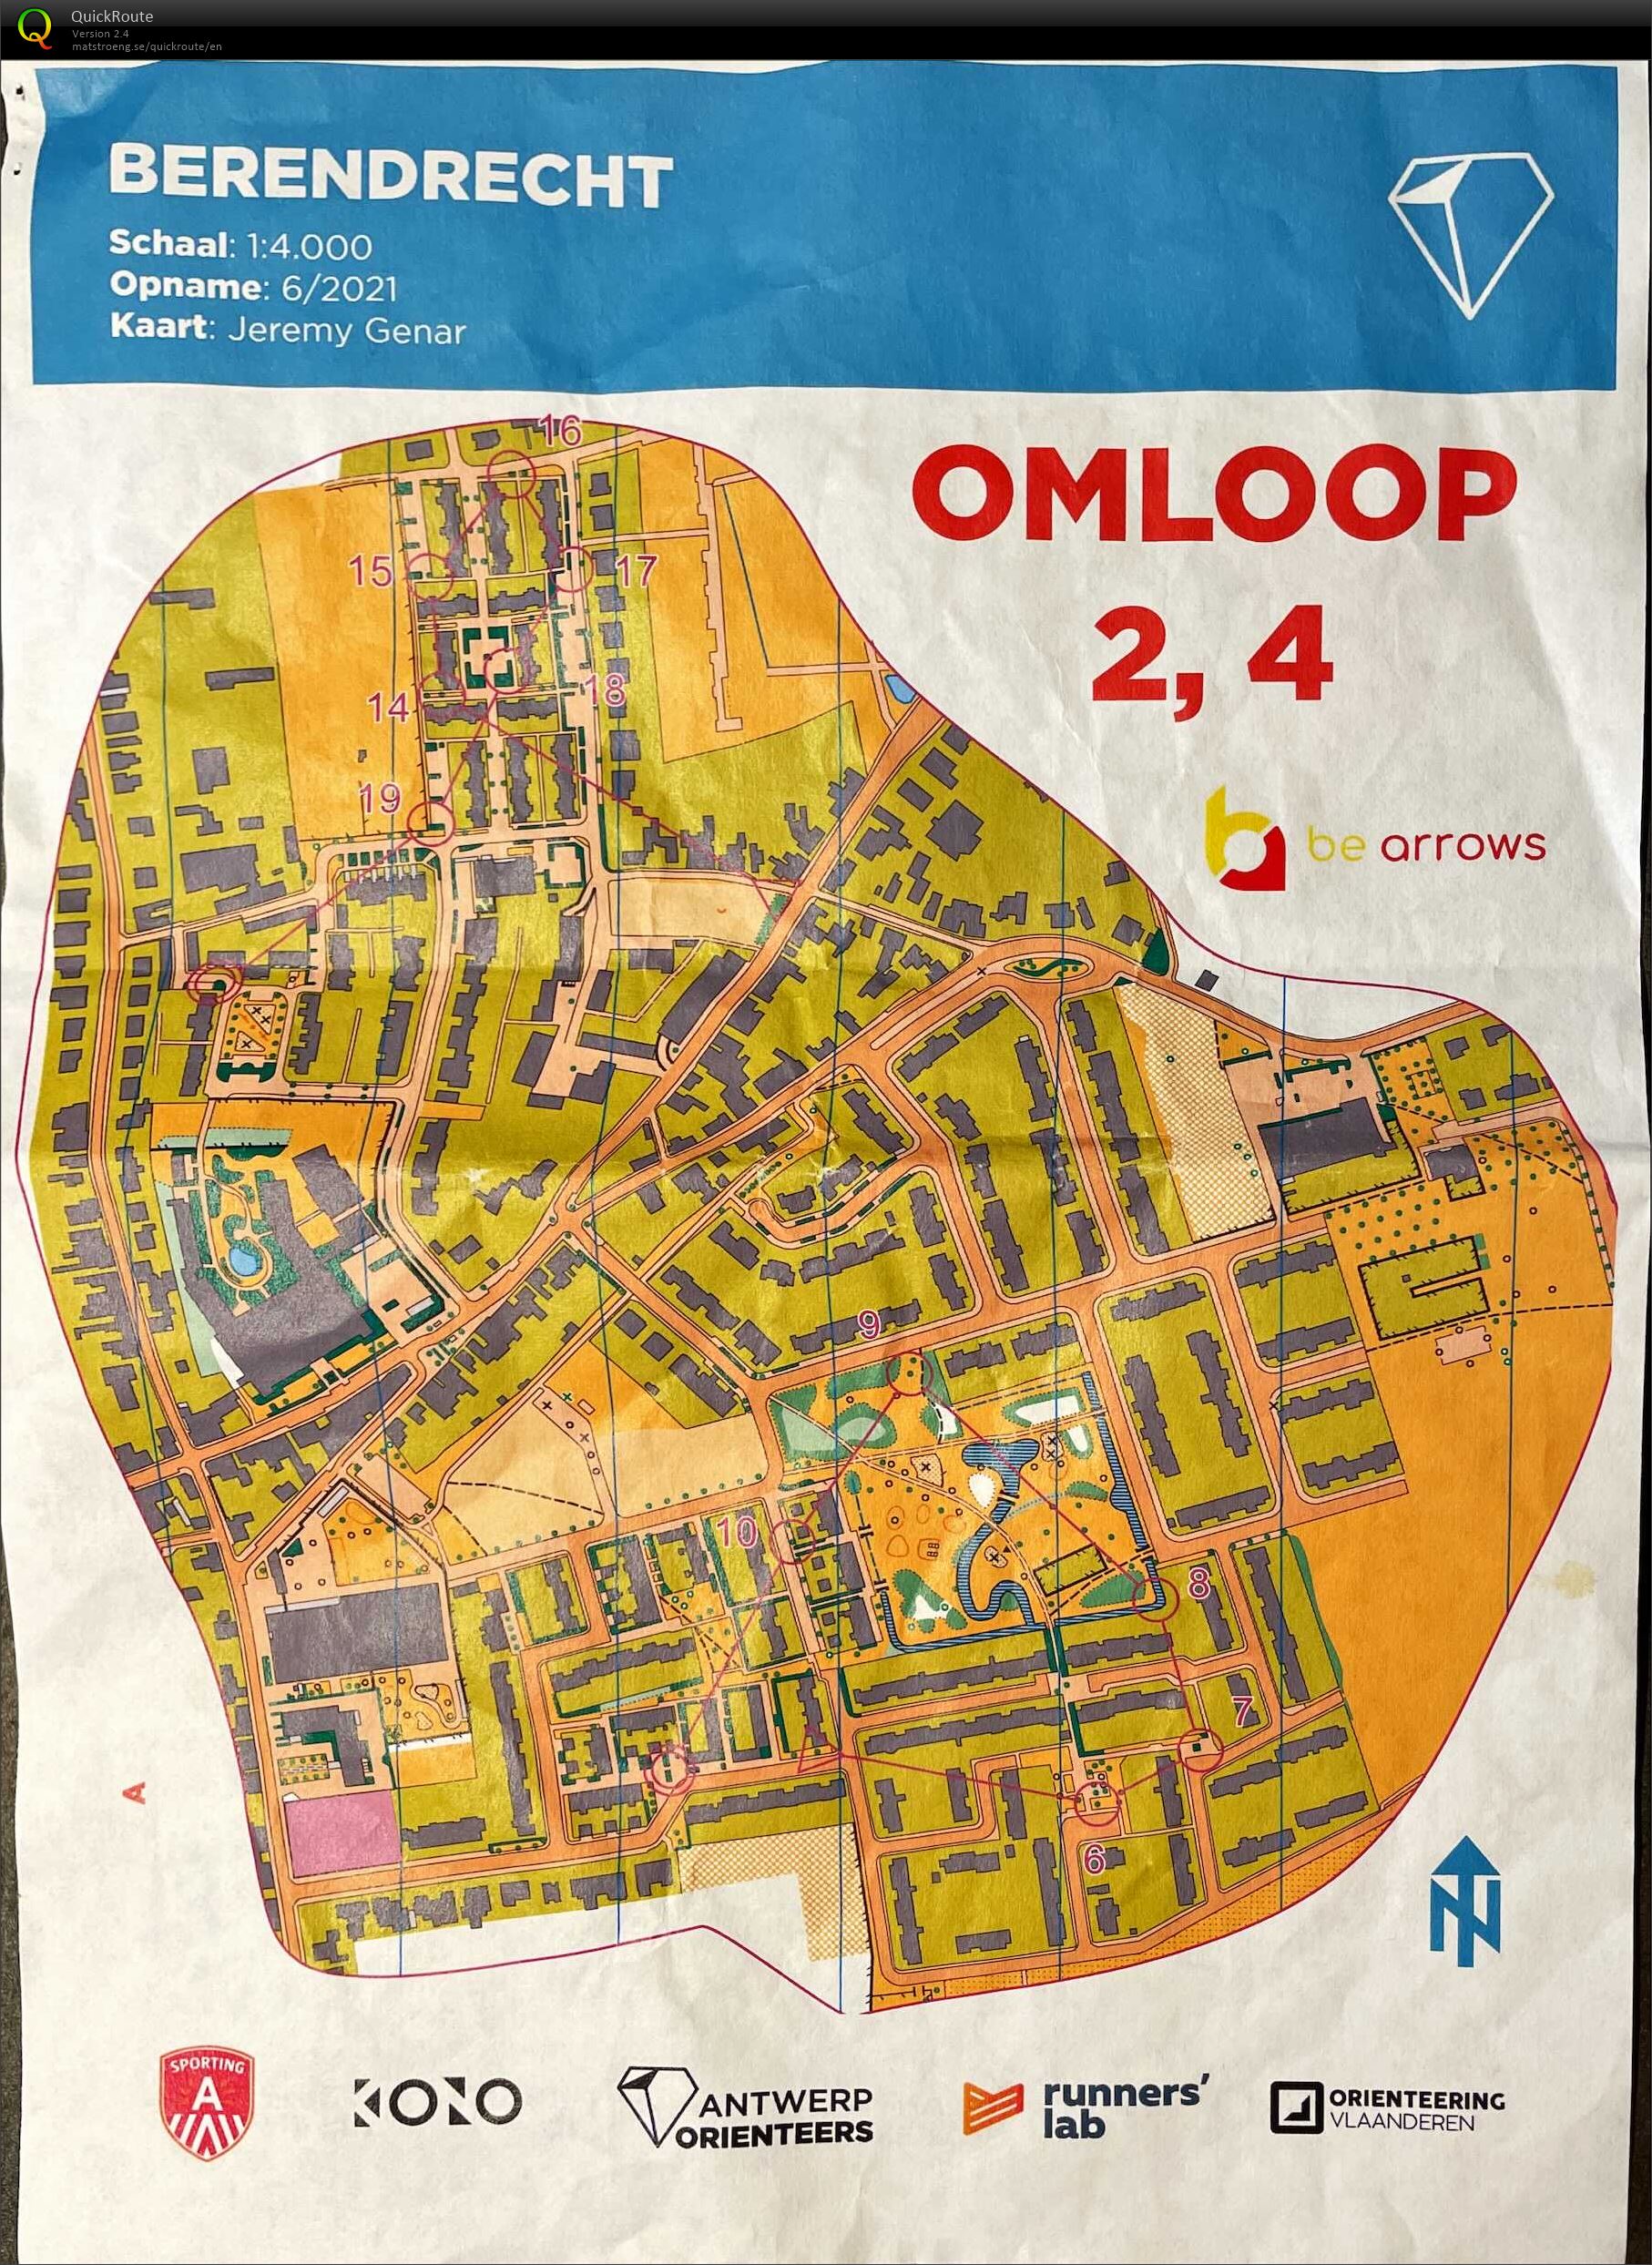 Berendrecht - Omloop 2,4 (11/06/2021)